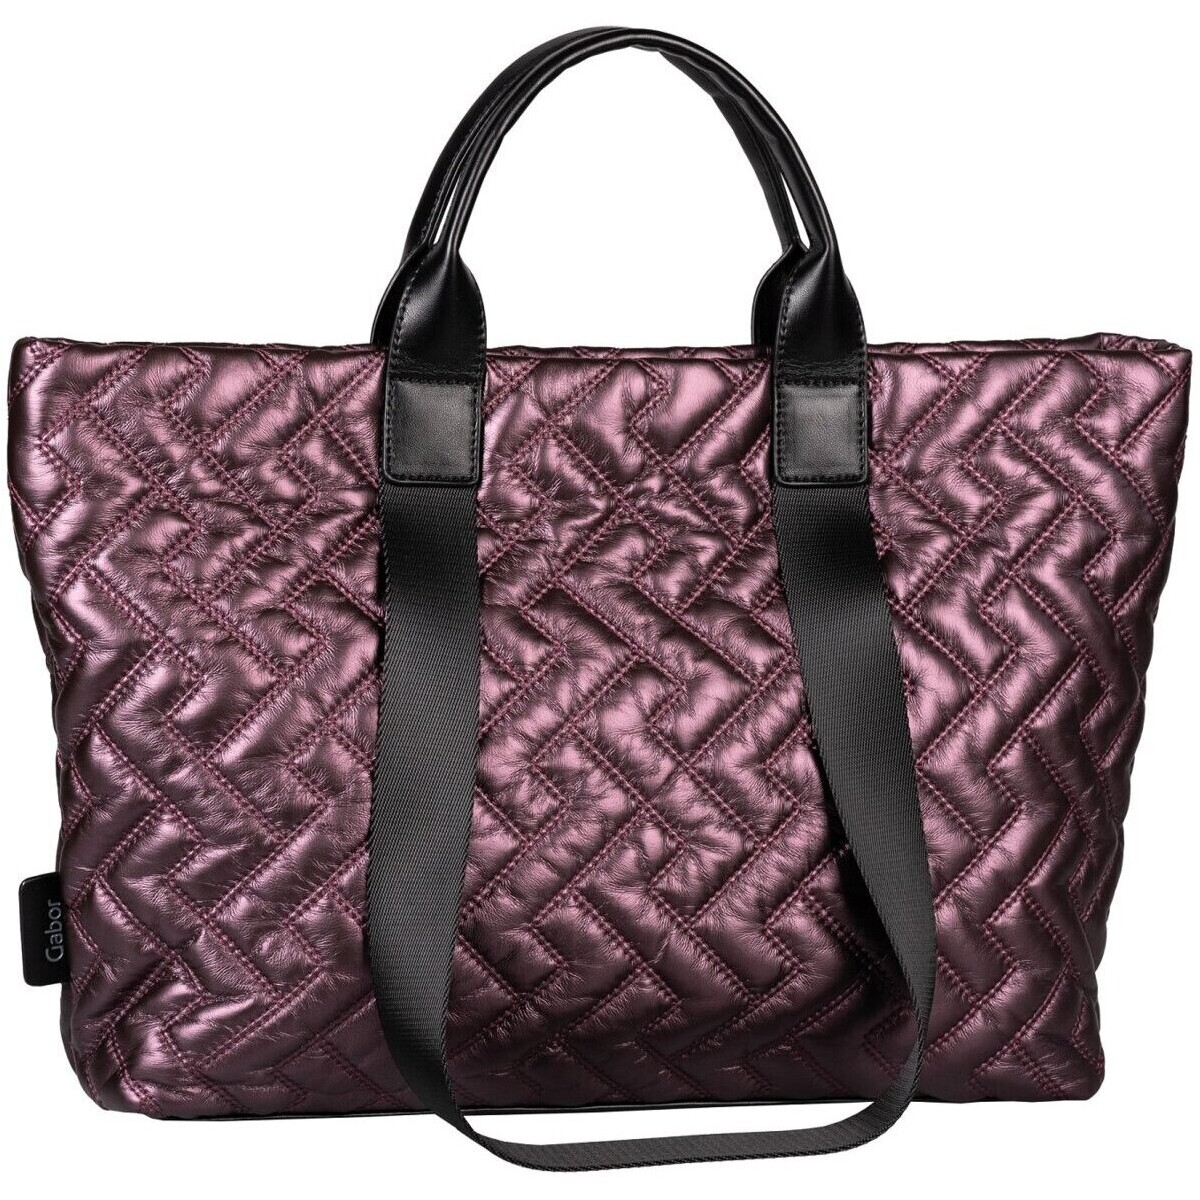 Taschen Damen Handtasche Gabor Mode Accessoires Haley, Zip tote bag L, purple 9352-79 Violett